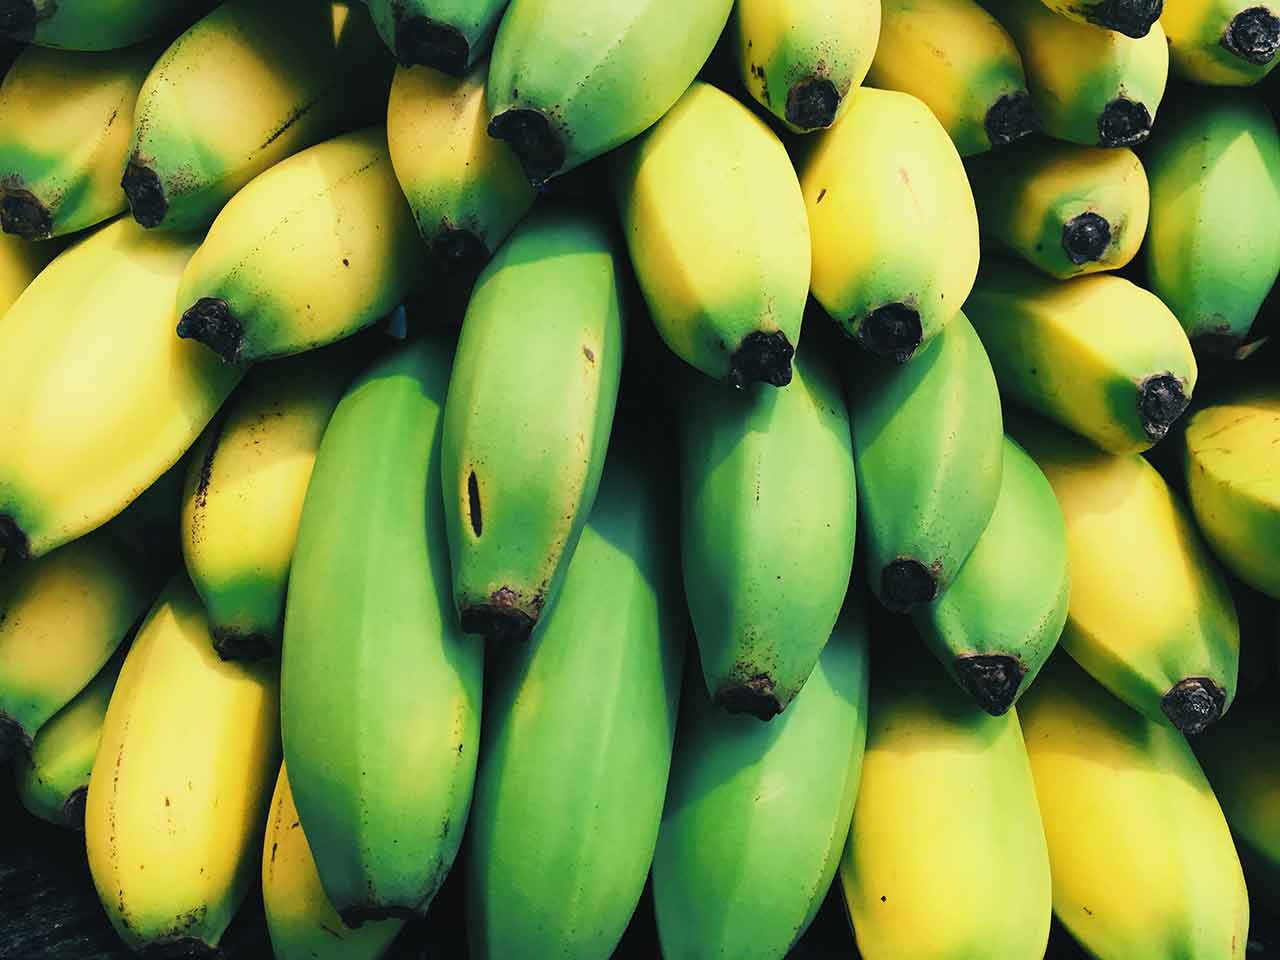 Armazenando bananas: como armazená-las por mais tempo?